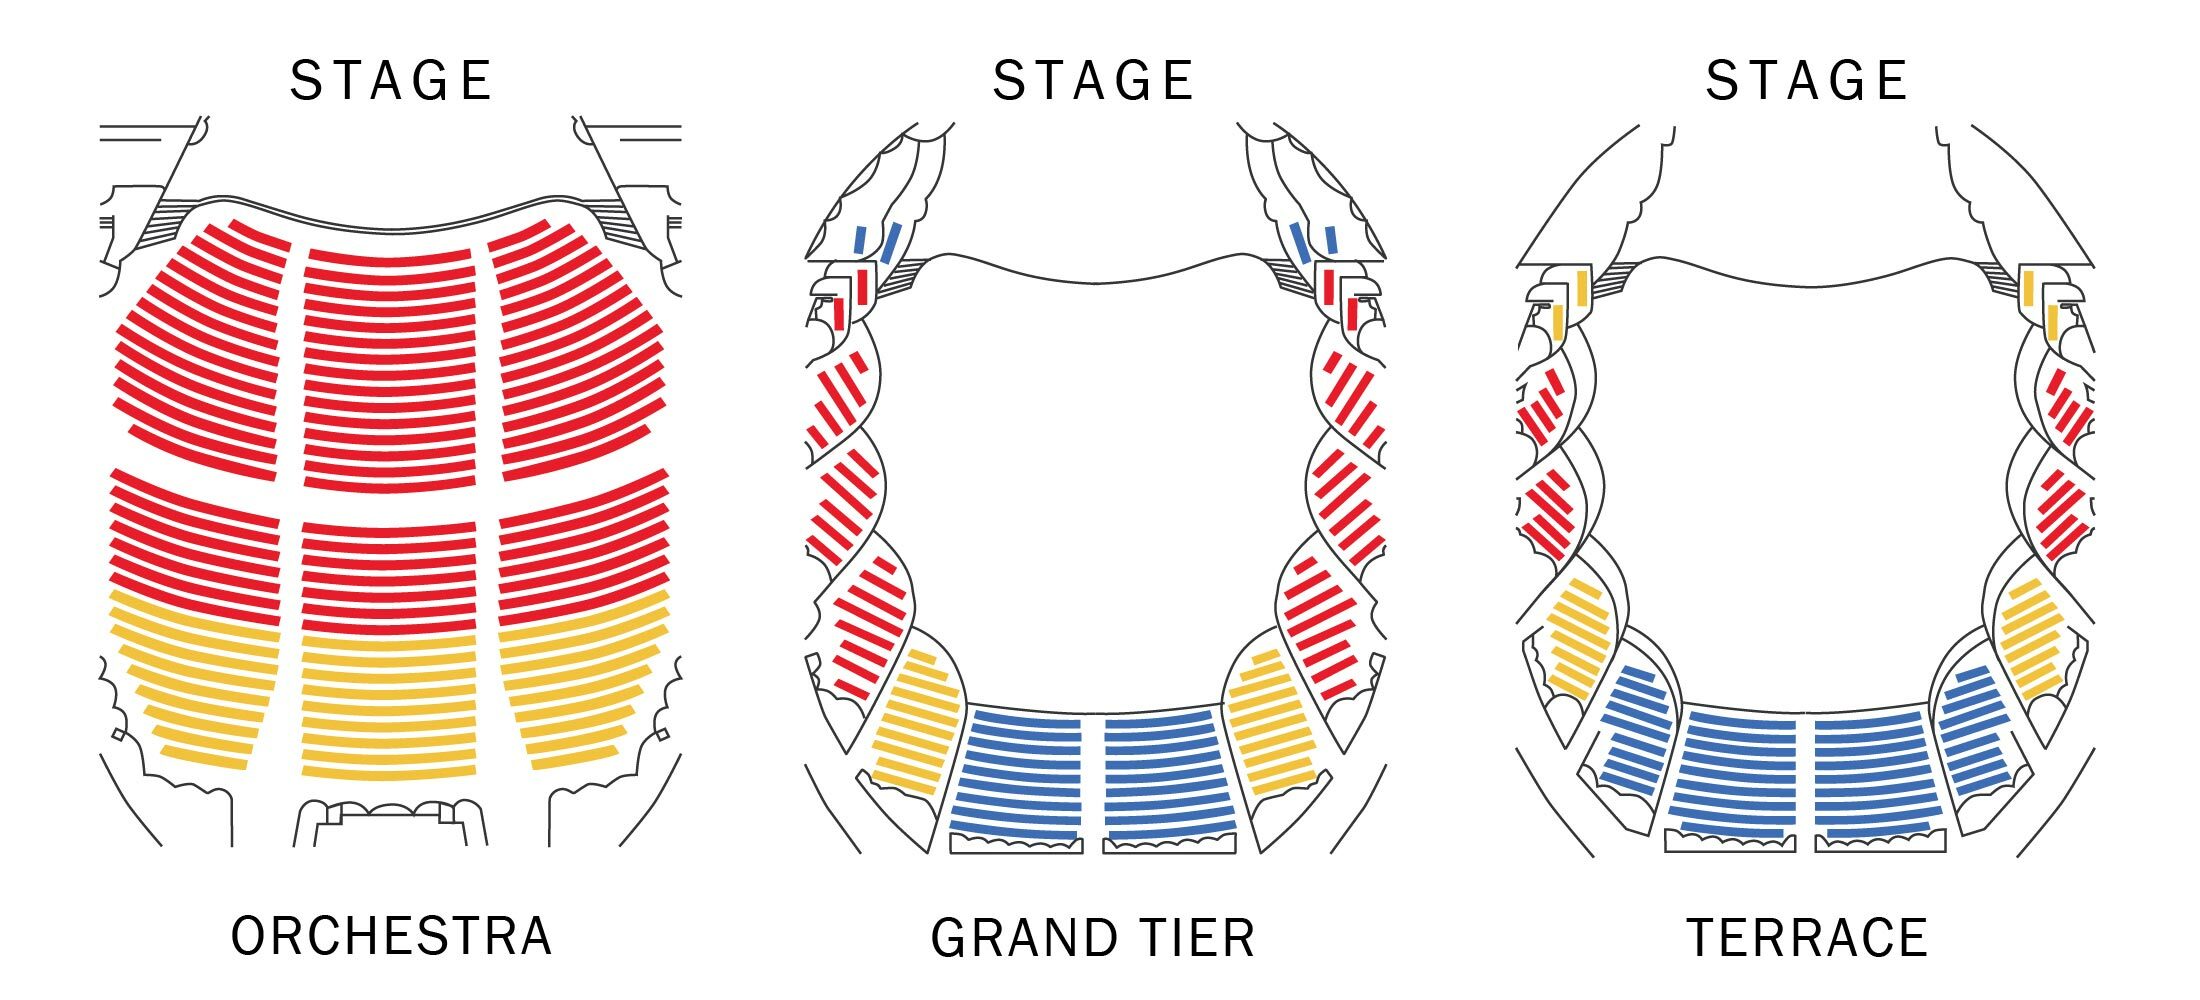 Seating diagram